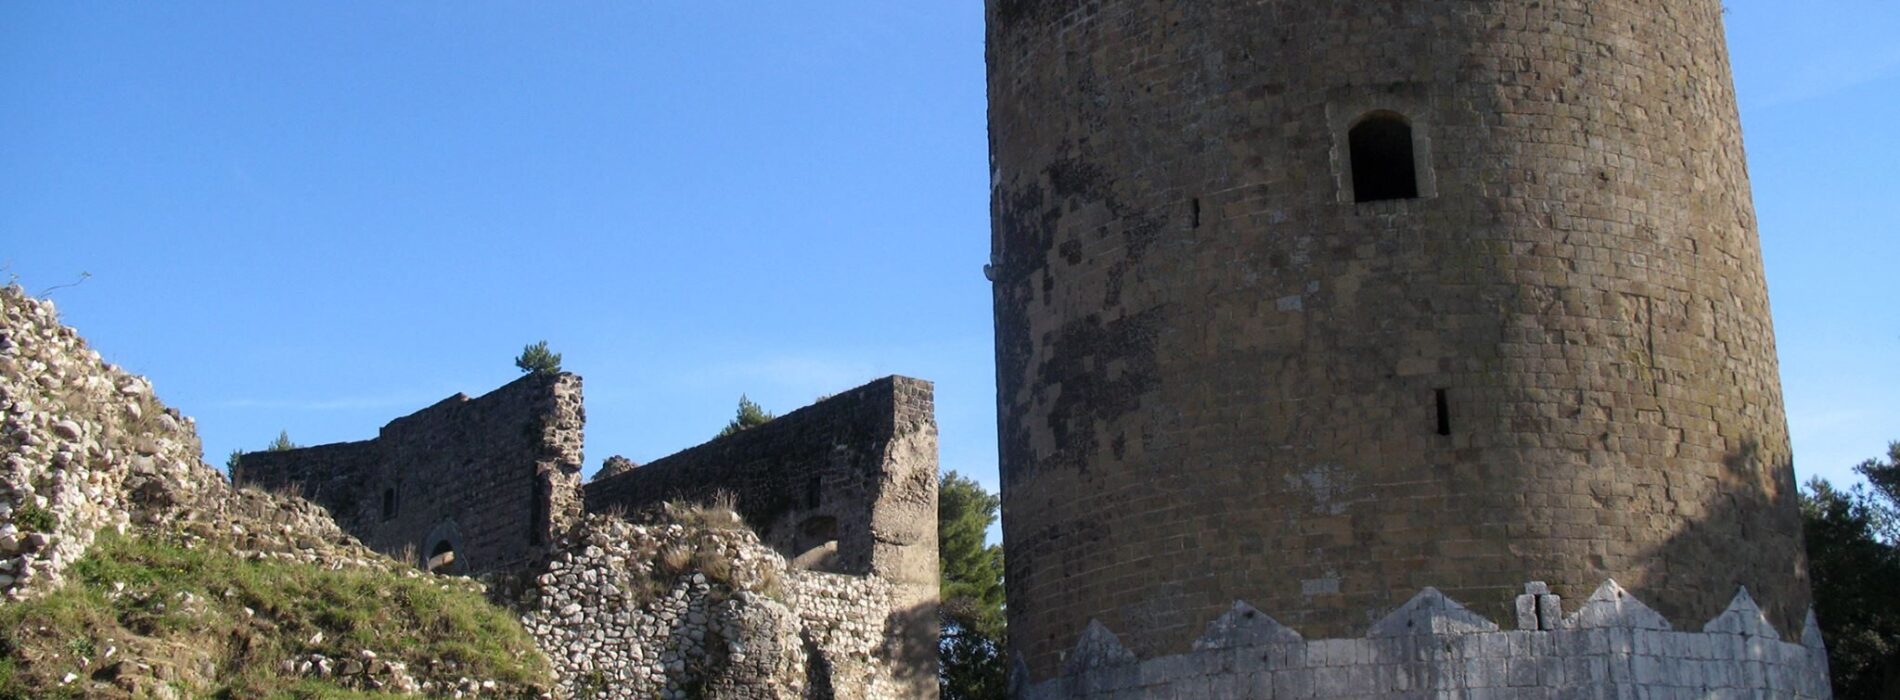 Castello di Casertavecchia, qui la chioccia con i pulcini d’oro